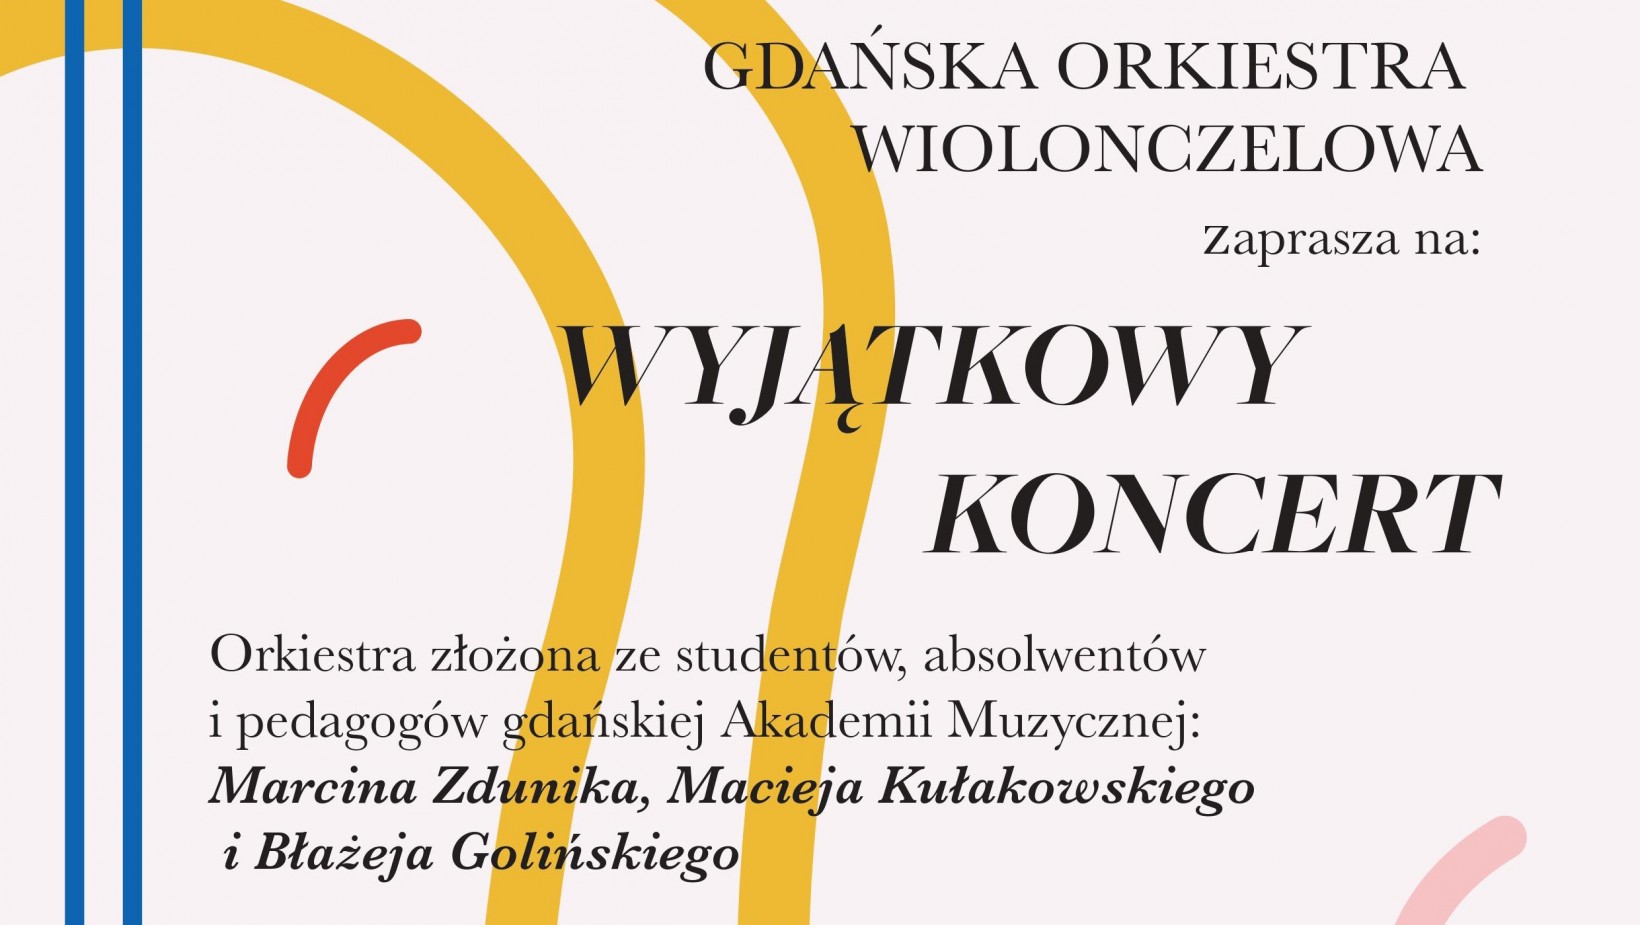 Gdańska Orkiestra Wiolonczelowa